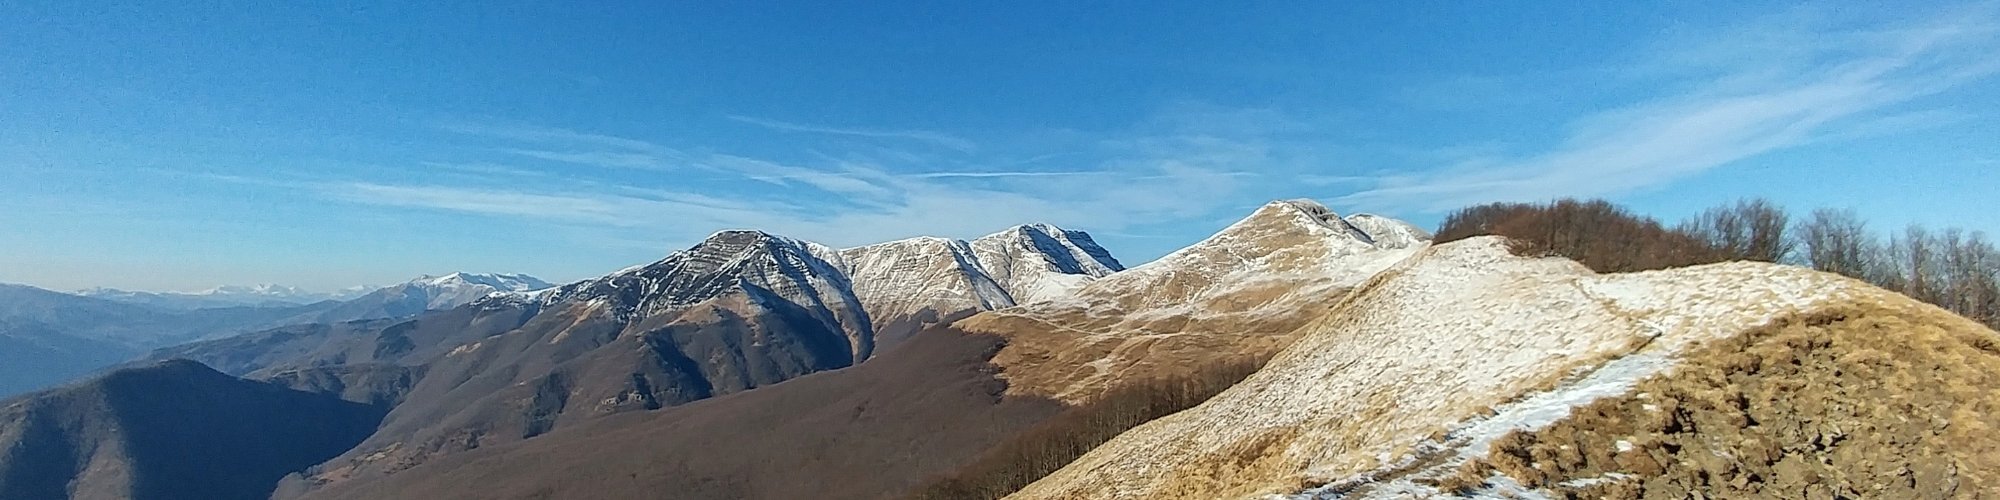 pistoia-mountains